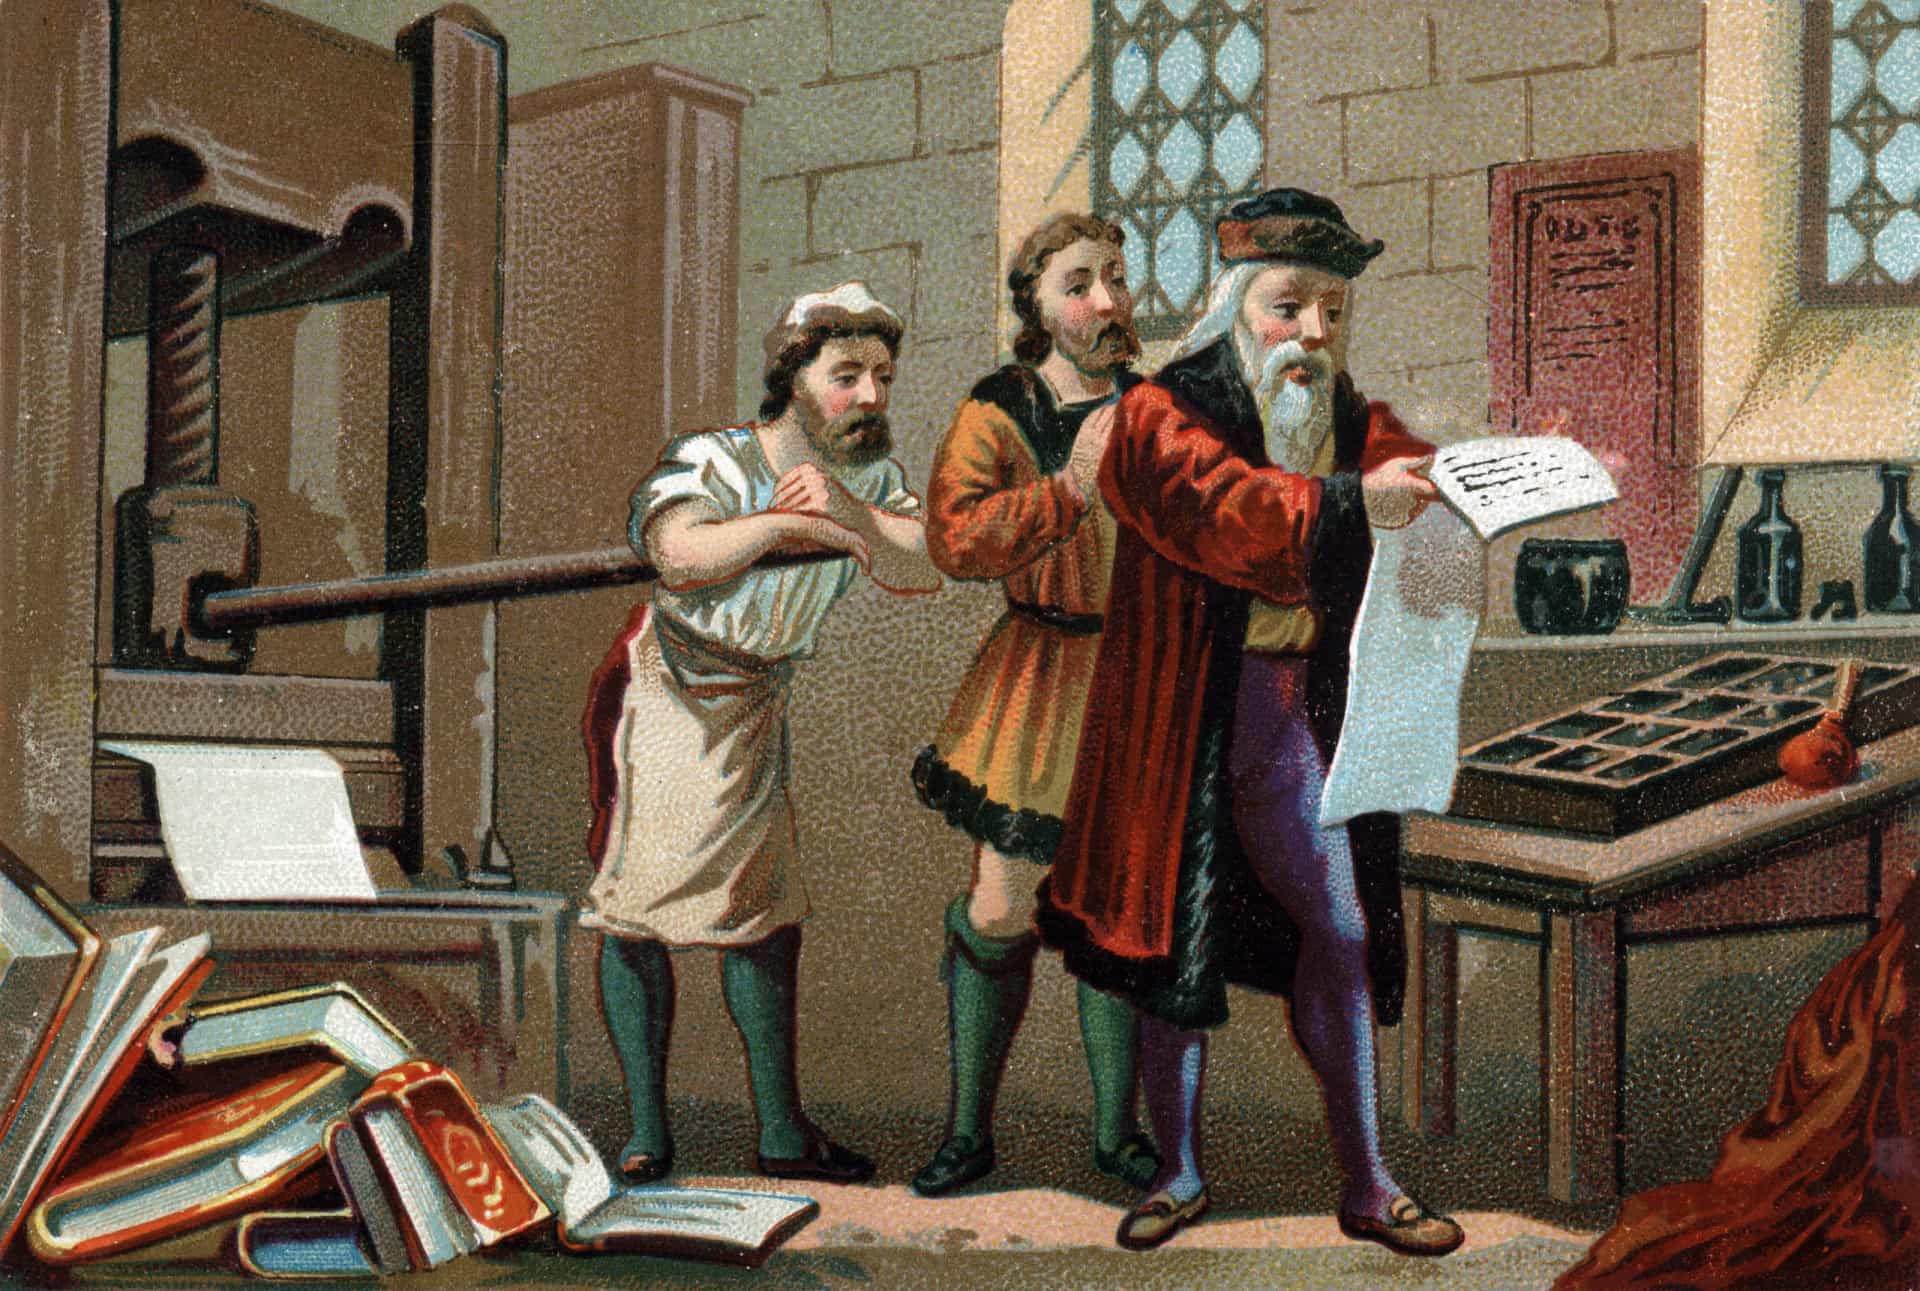 On peut affirmer que la presse à imprimer de Gutenberg est l'invention la plus importante des temps modernes. Pour la première fois dans l'histoire, des idées et des informations ont pu être reproduites et diffusées facilement et à un prix abordable pour les masses.